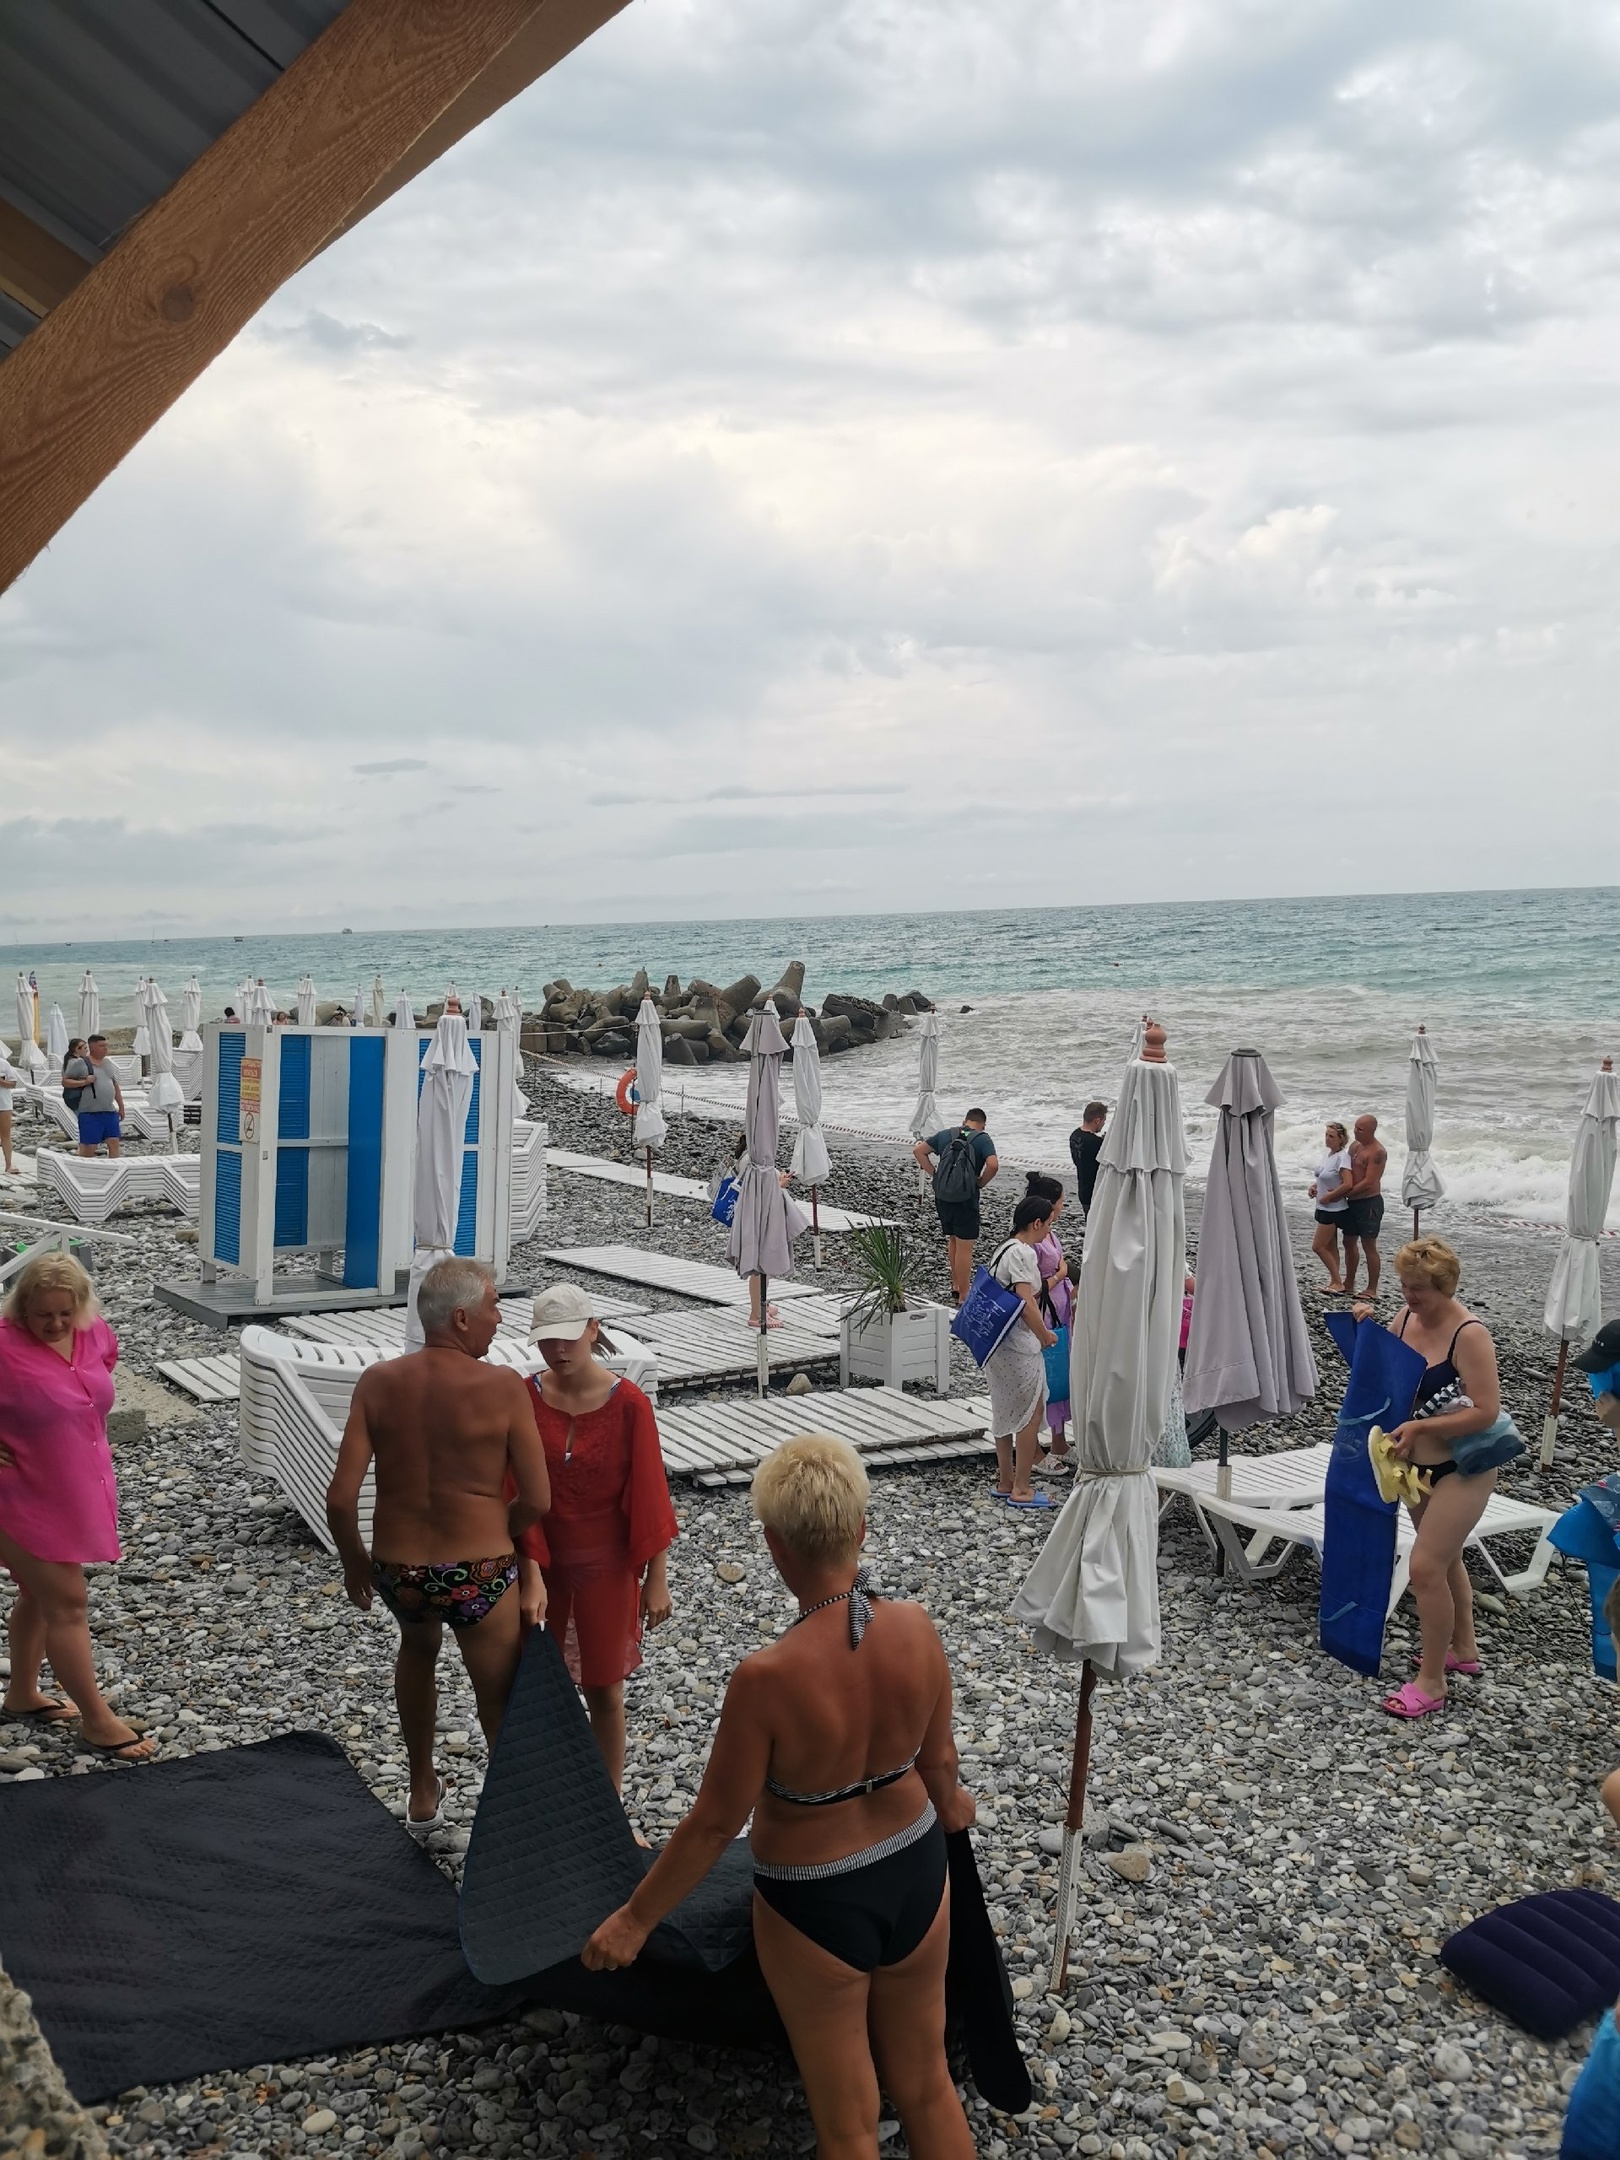 «Везде вонь и грязь, без ротавируса не уедете»: туристов умоляют не ехать в отпуск на Черное море. Отдых будет испорчен 